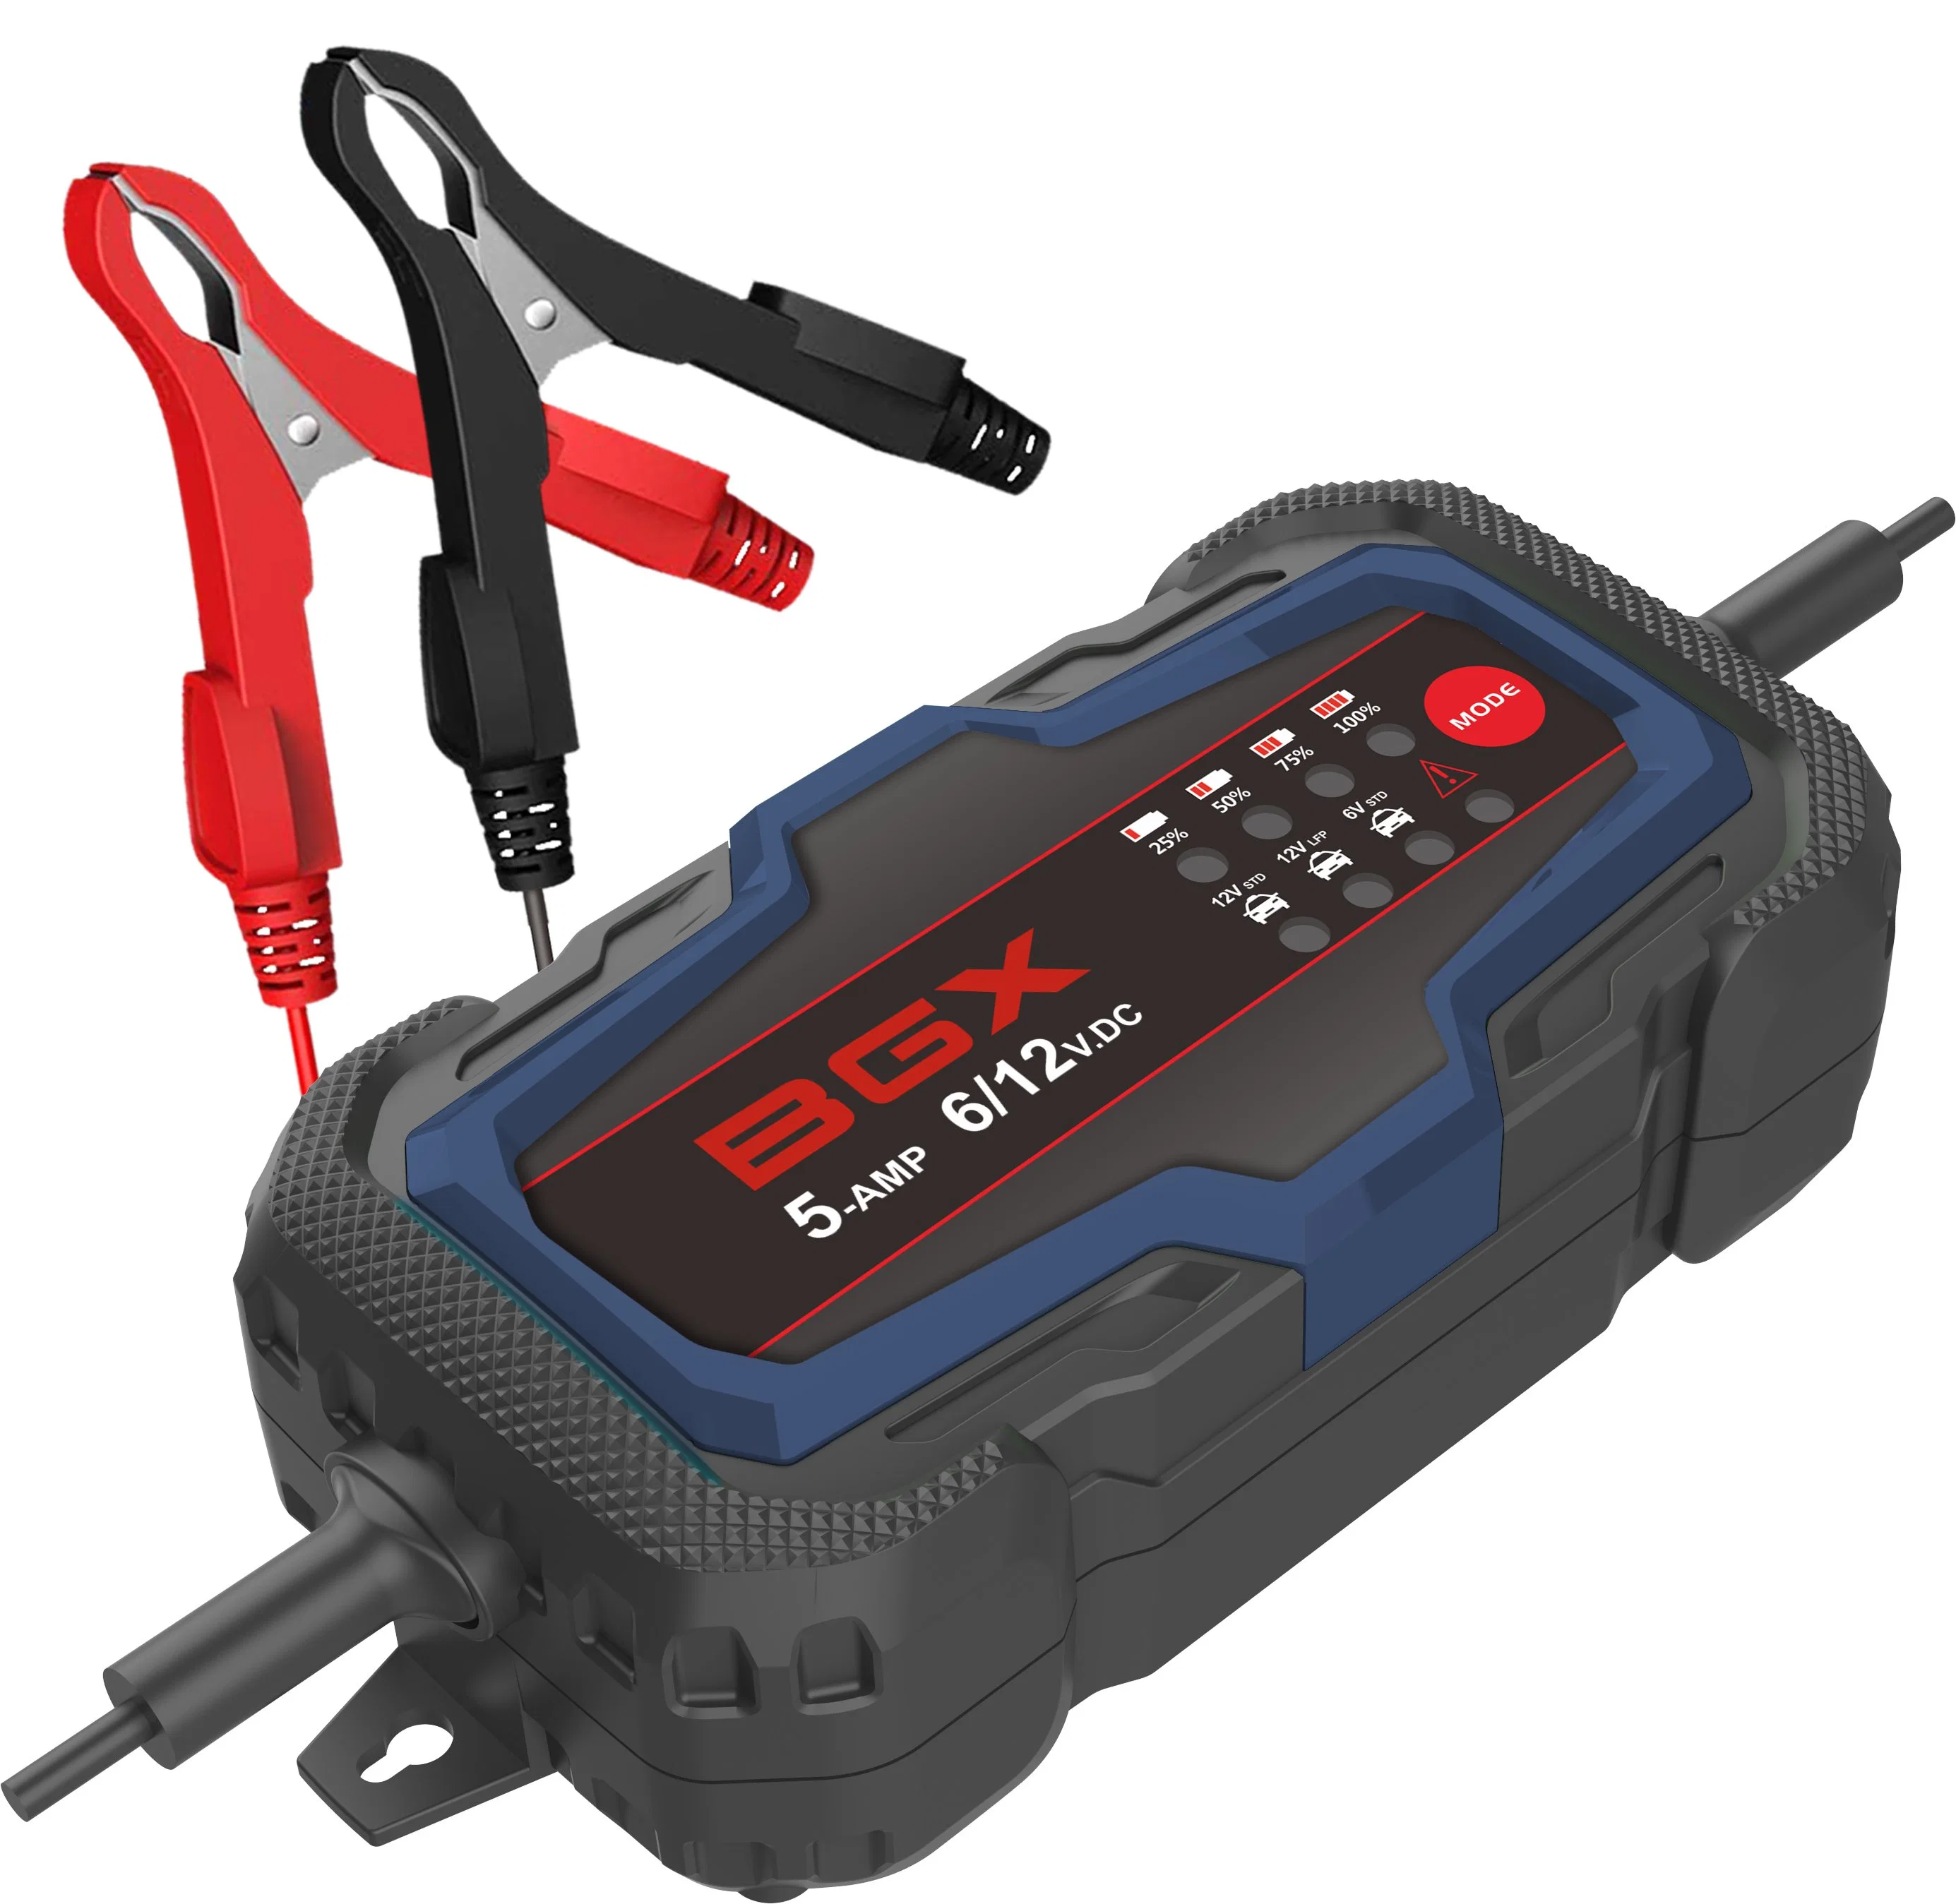 Carregador de bateria para automóvel BGX 12 V 5 a LED carregador de bateria para automóvel ferramentas